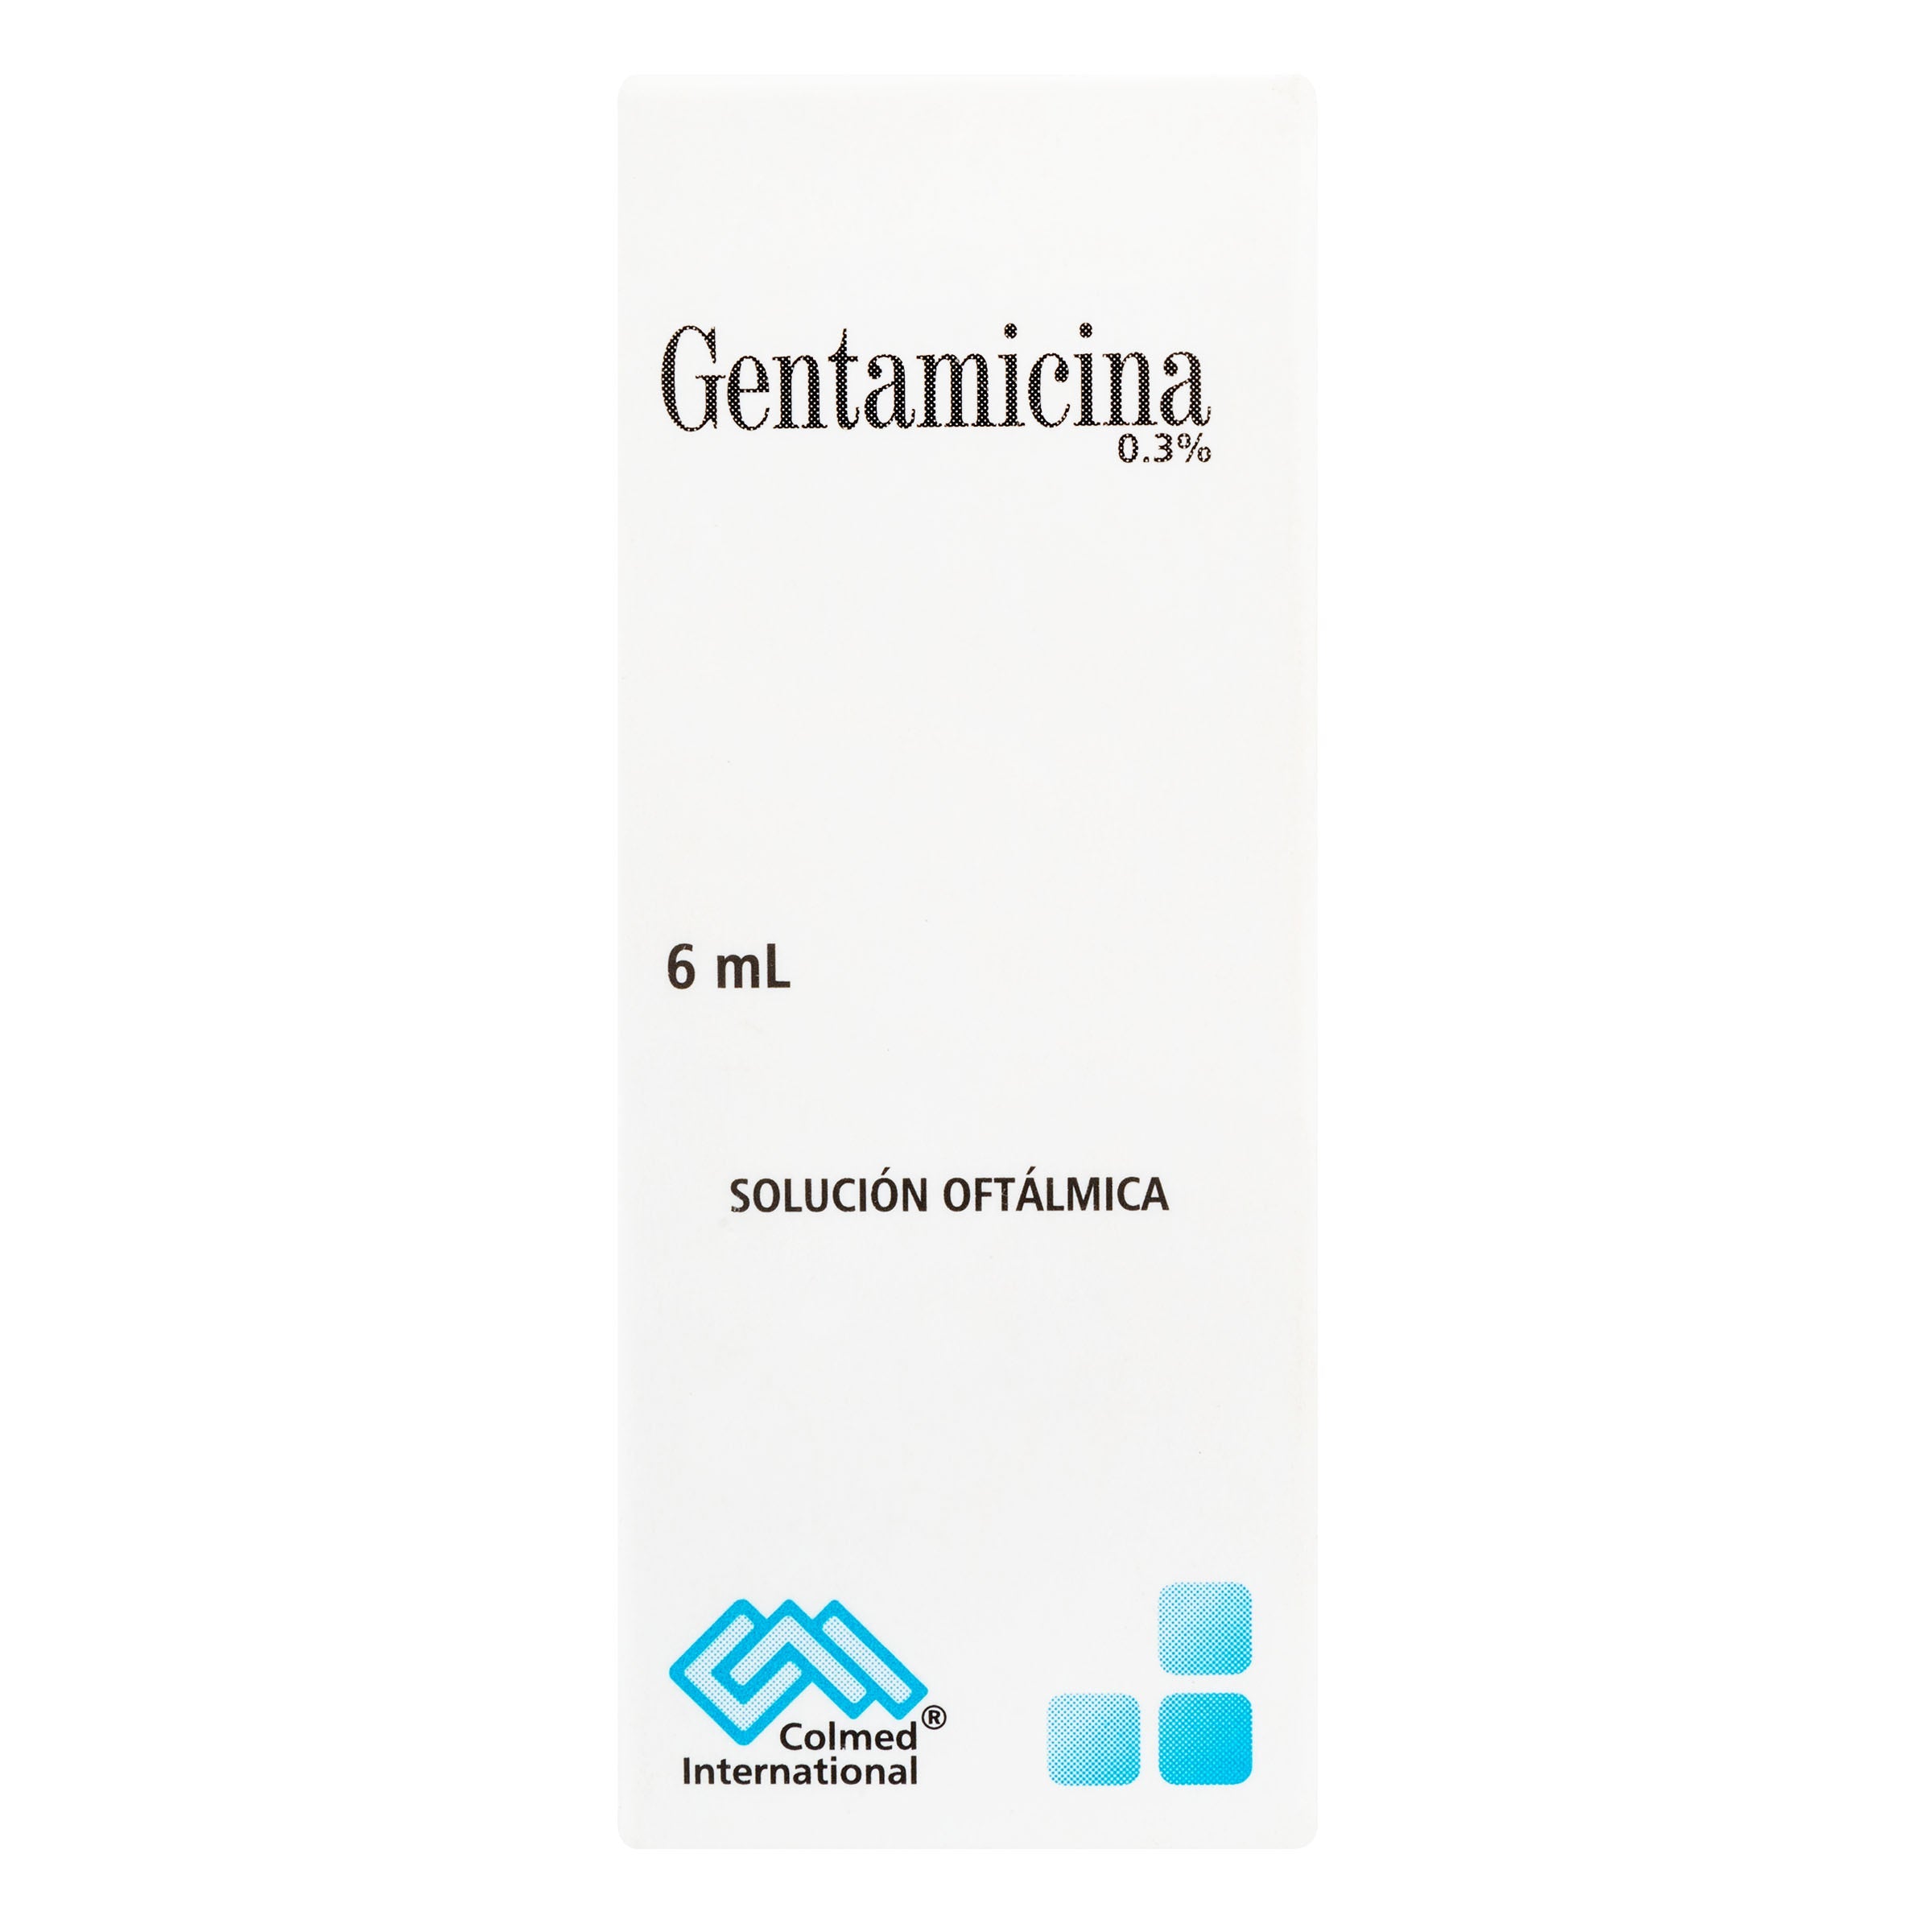 GENTAMICINA 0.3% OFTALMICA 6 ML PC